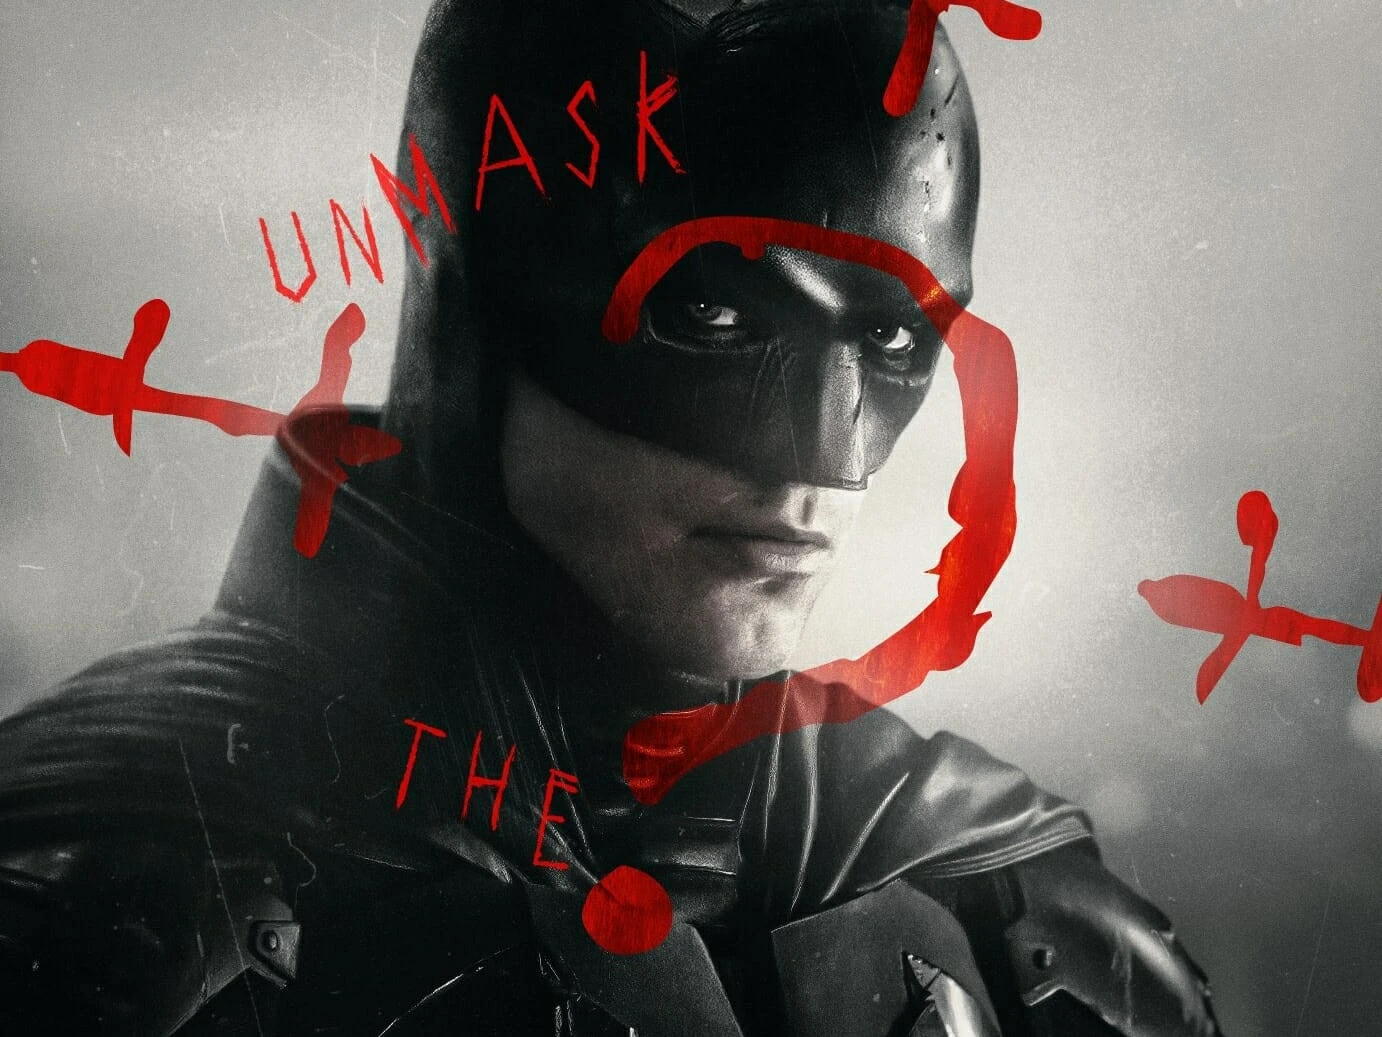 The Batman: Dave Bautista não será Bane no novo filme do herói